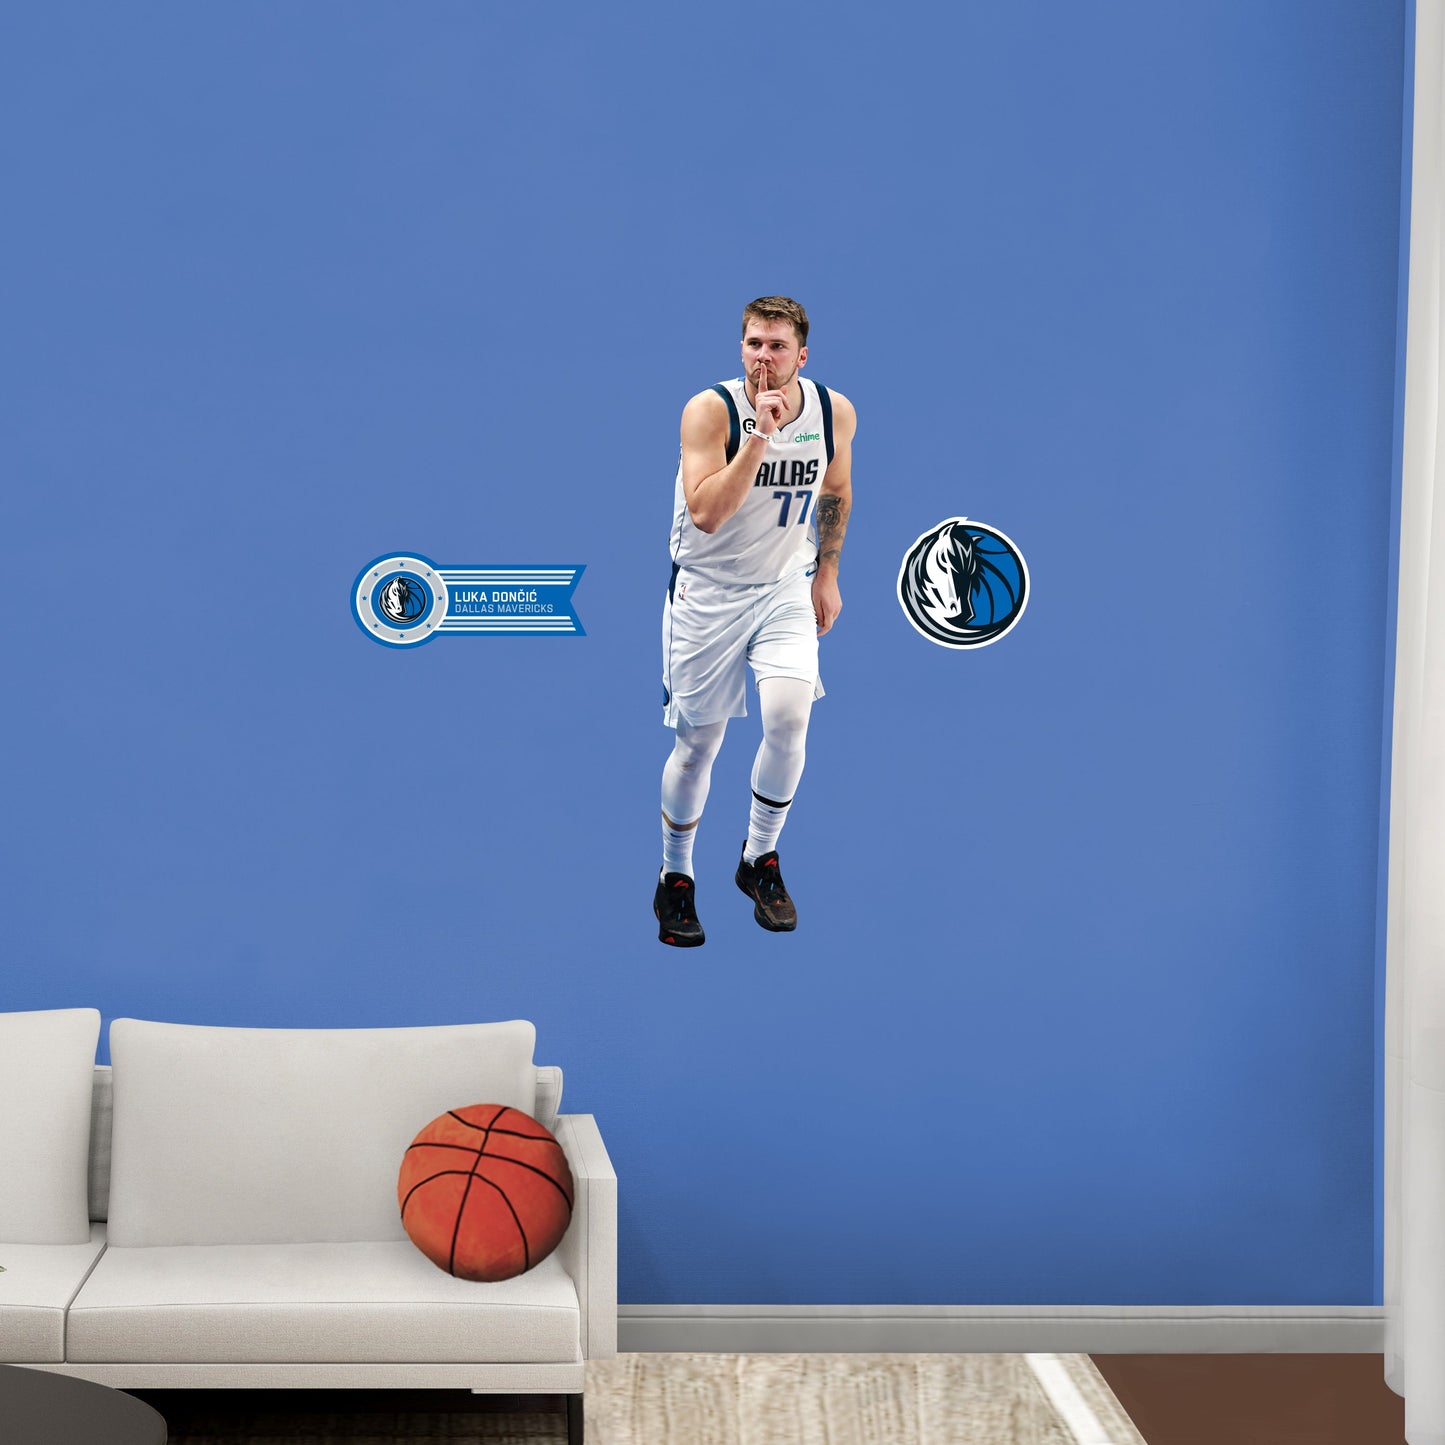 Dallas Mavericks: Luka DonÄiÄ‡ Shhh - Officially Licensed NBA Removable Adhesive Decal